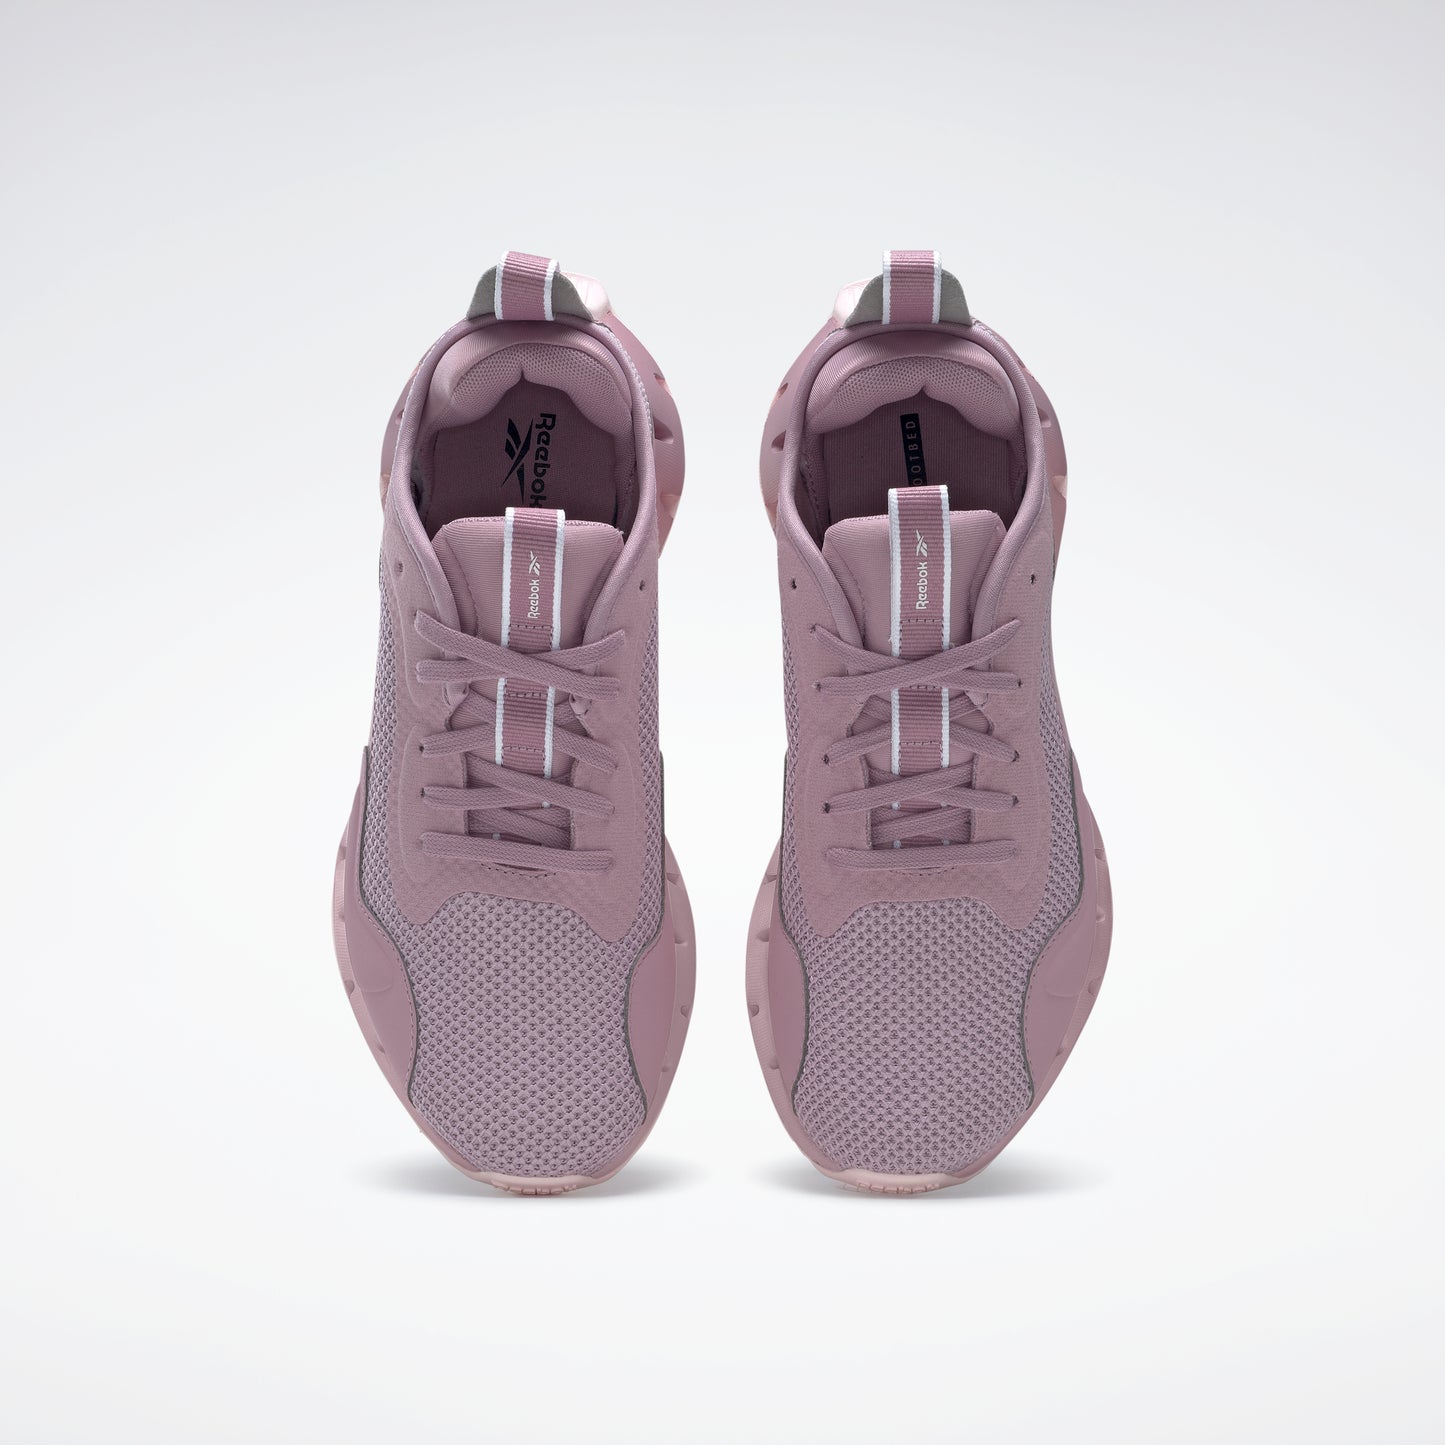 Reebok Footwear Women Zig Dynamica Shoes Inflil/Inflil/Porpnk